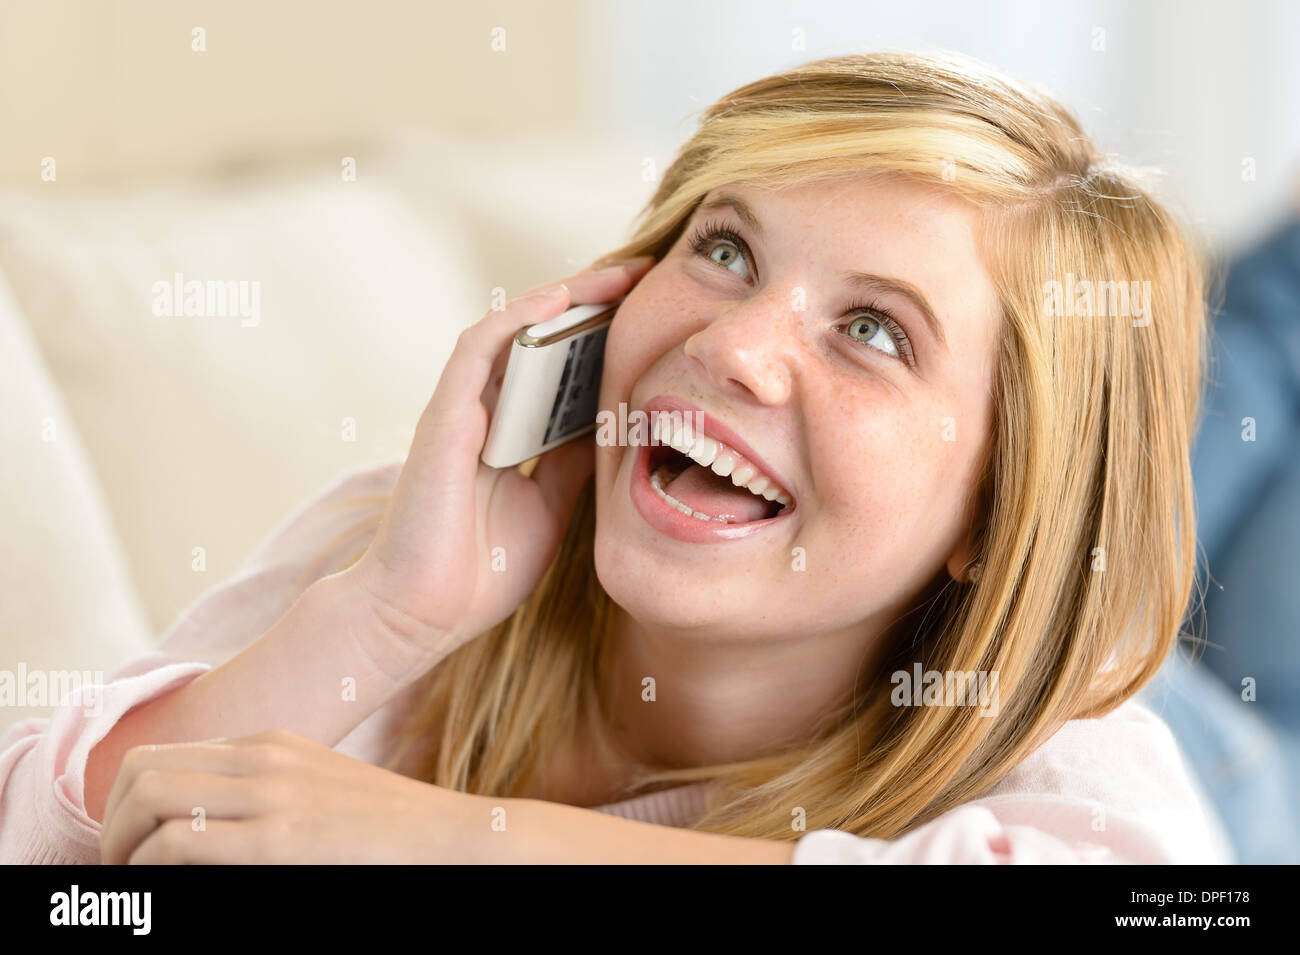 Пока она разговаривала по телефону видео. Девочка подросток смеется. Девушка с телефоном смеется. Девушка подросток смеется. Подростки смеются с телефоном.